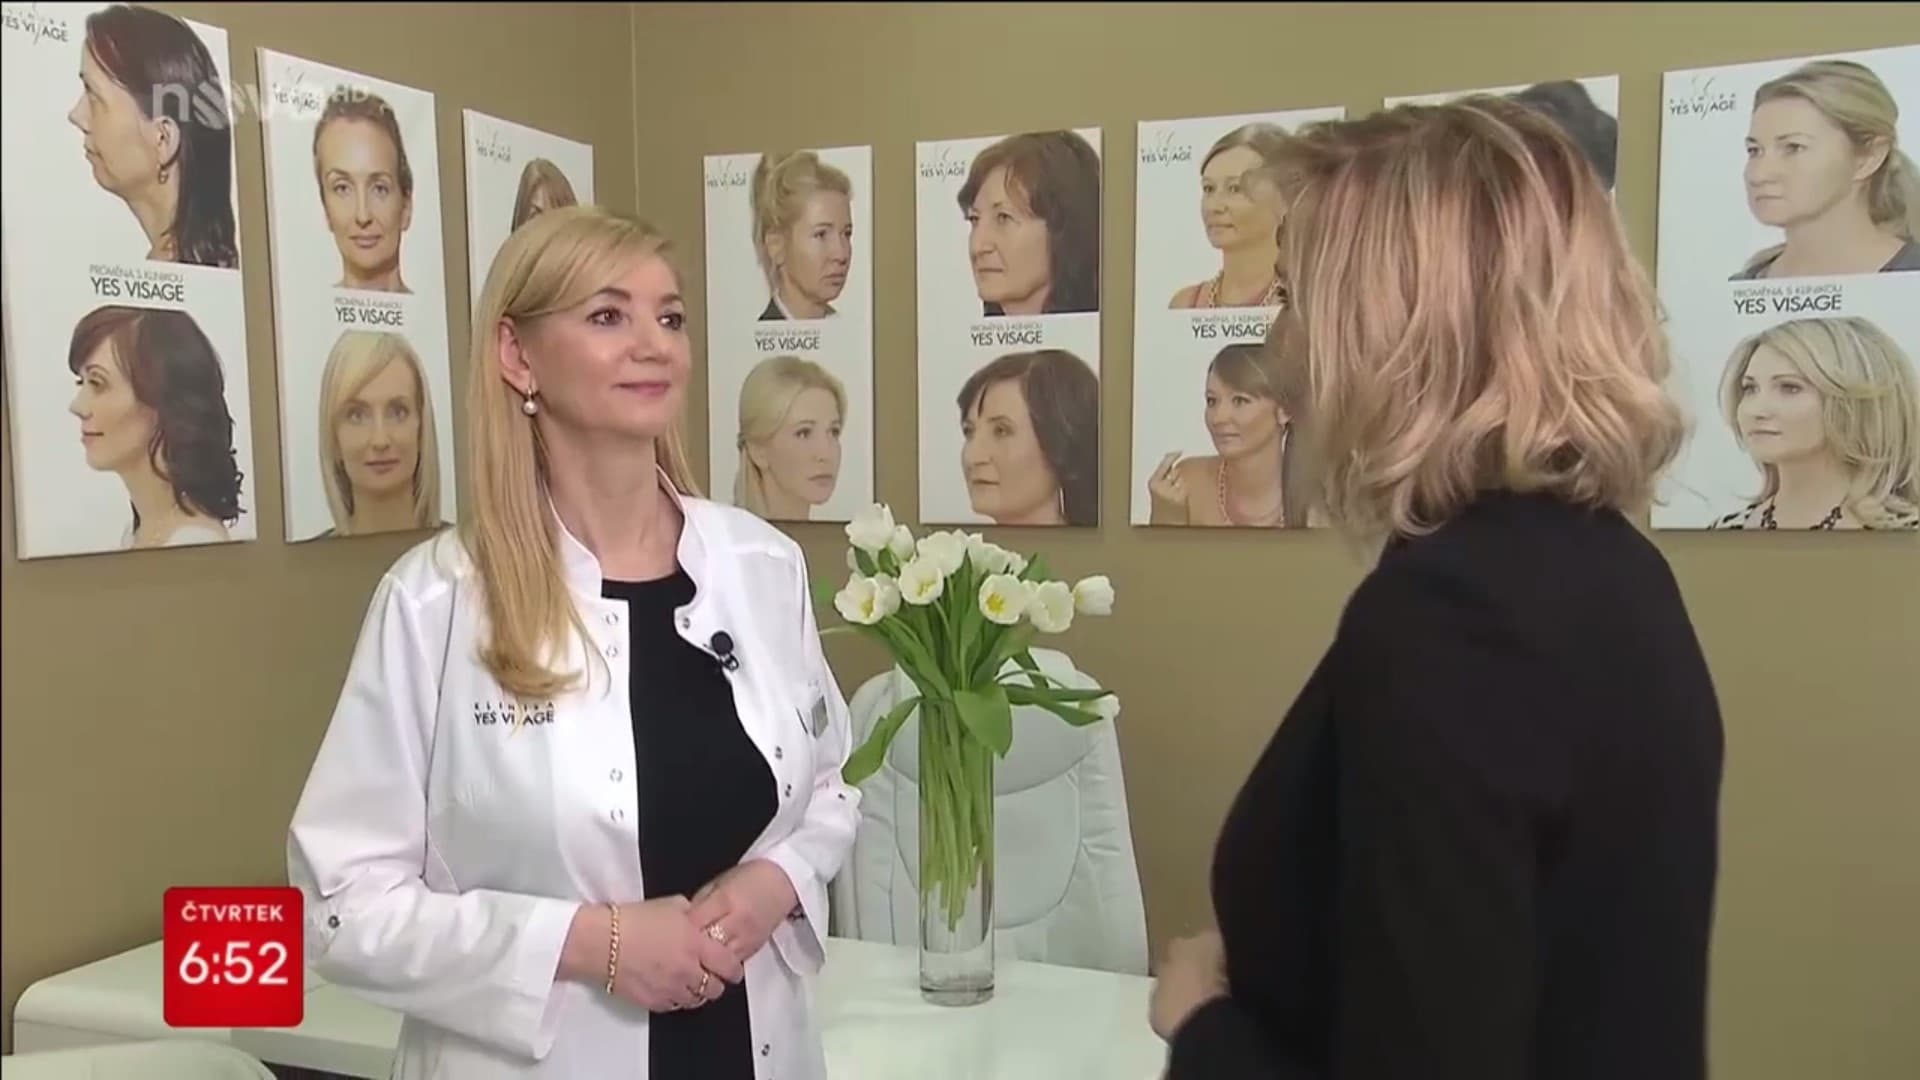 Dermatológia Kliniky YES VISAGE v pořadu Snídaně s NOVOU